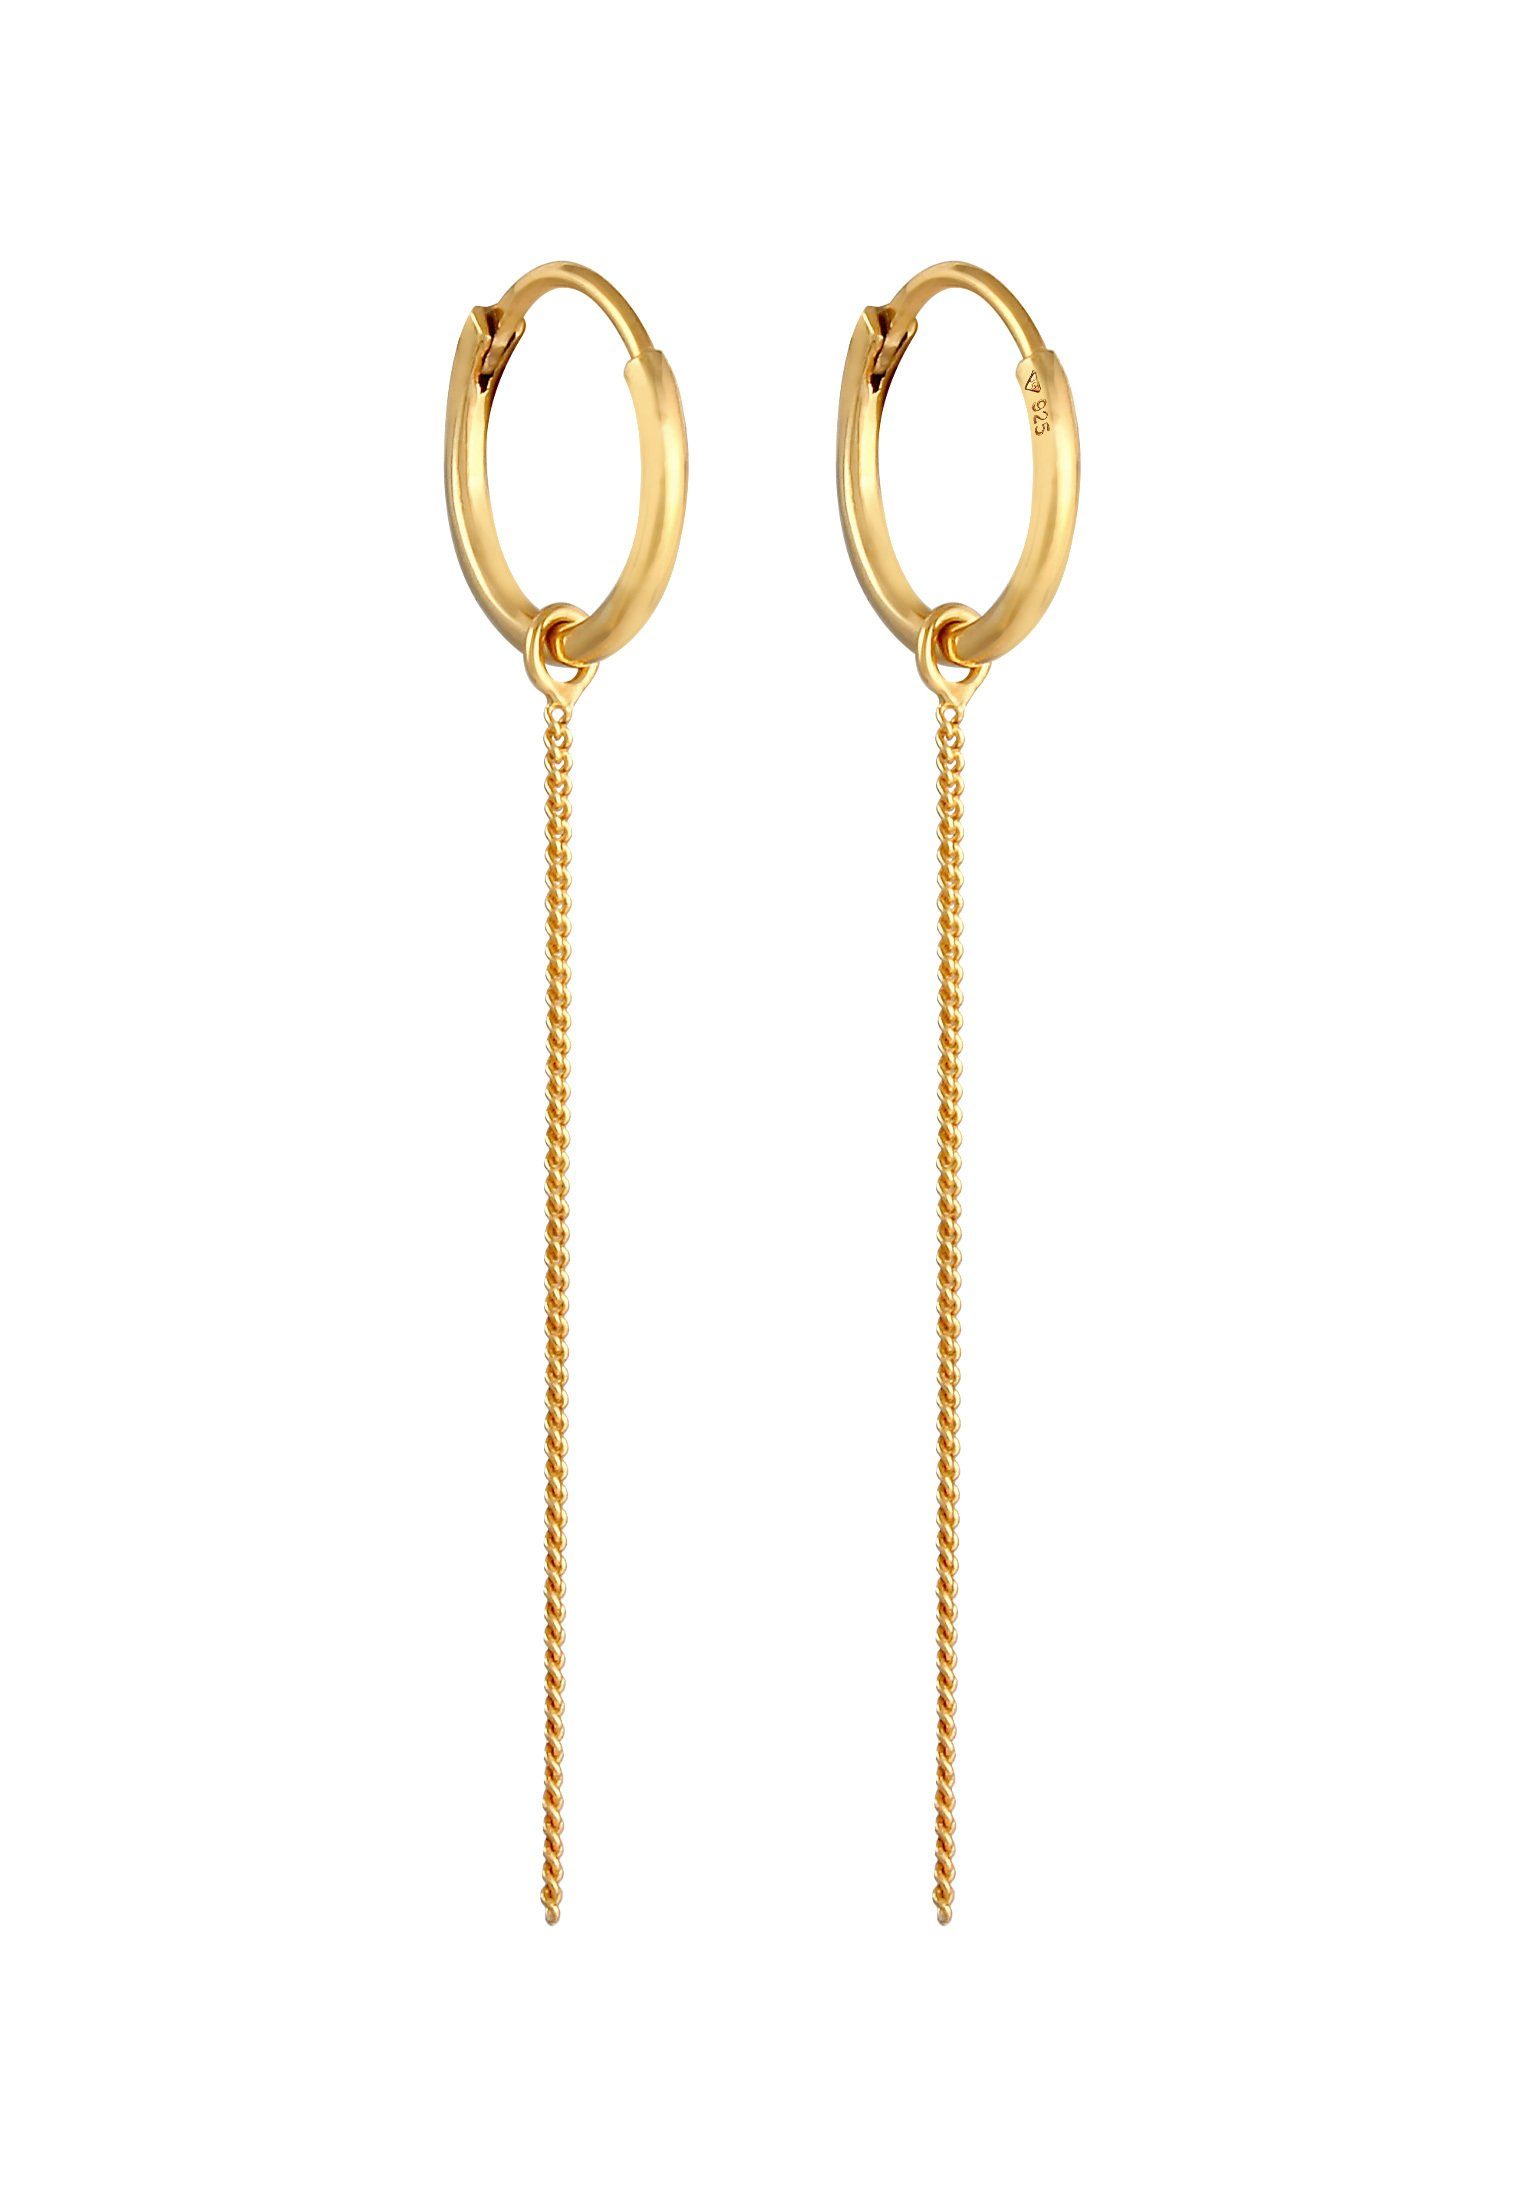 Elli Paar Creolen Creolen Ohrhänger Einhänger Gold Kettchen Silber 925